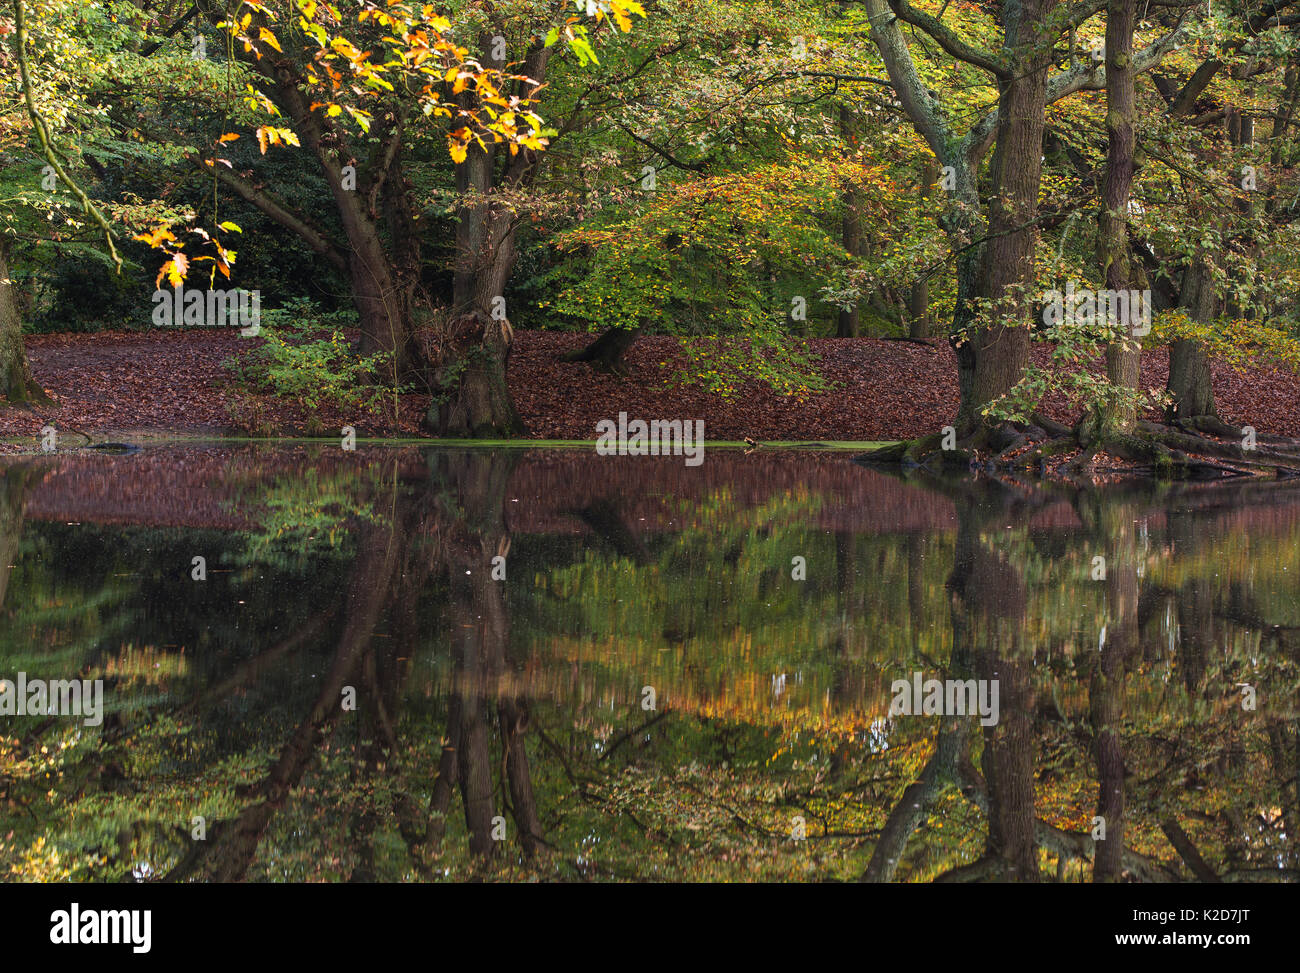 Englisch Eiche (Quercus robur) und Kupfer Buche (Fagus purpurea) in Wasser im Herbst reflektiert, Sandy Heath Hampstead Heath, London, England, UK. November. Stockfoto